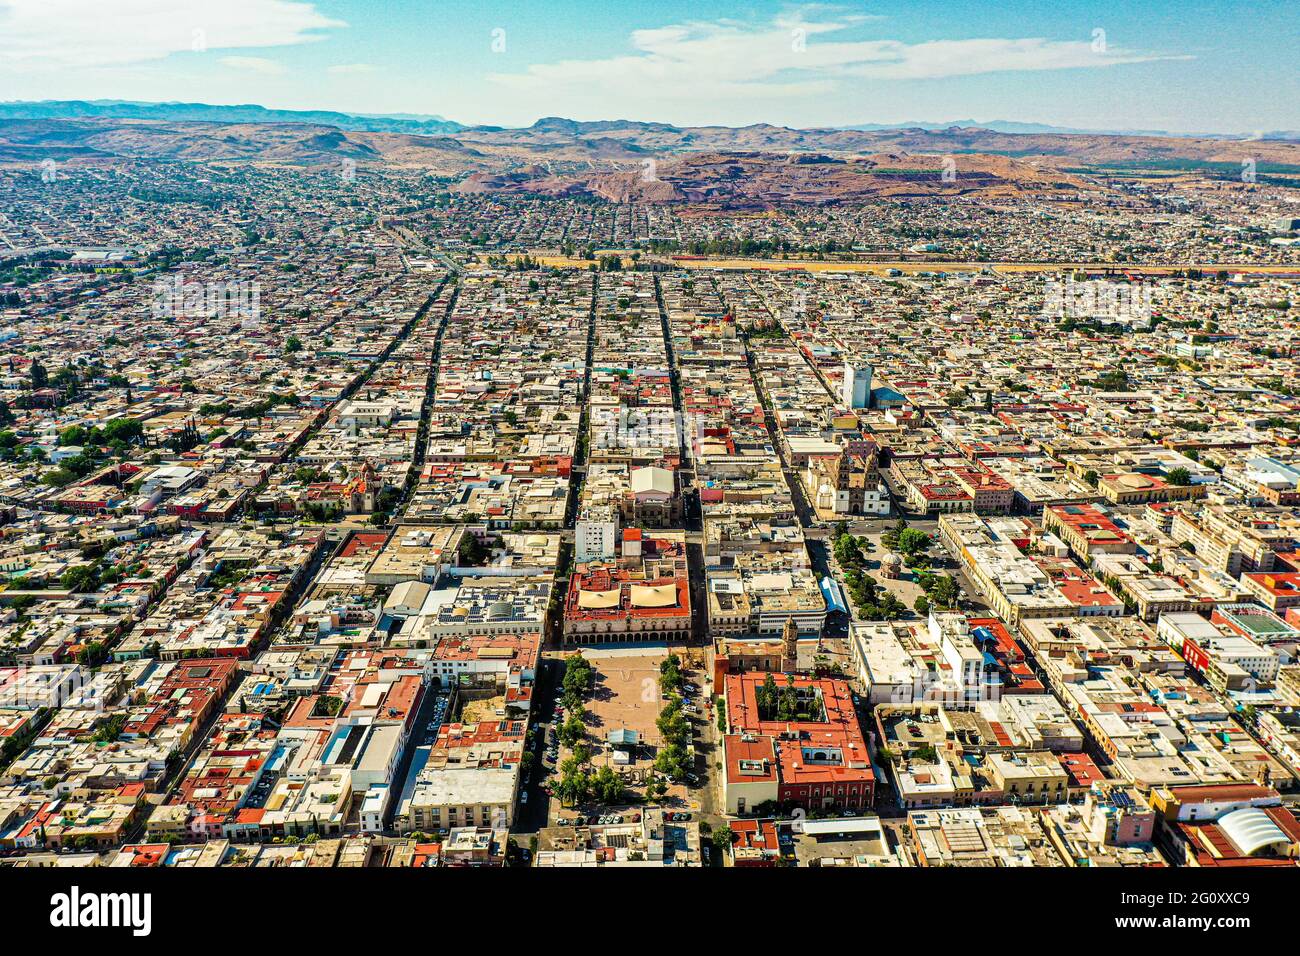 Aerial landscape or aerial view of the city of Victoria de Durango in Durango, Mexico ... (© Photo: Luis Gutierrez NortePhoto.com)  Paisaje aéreo o vista aérea de la ciudad Victoria de Durango en Durango, Mexico... (© Photo: Luis Gutierrez NortePhoto.com) Stock Photo